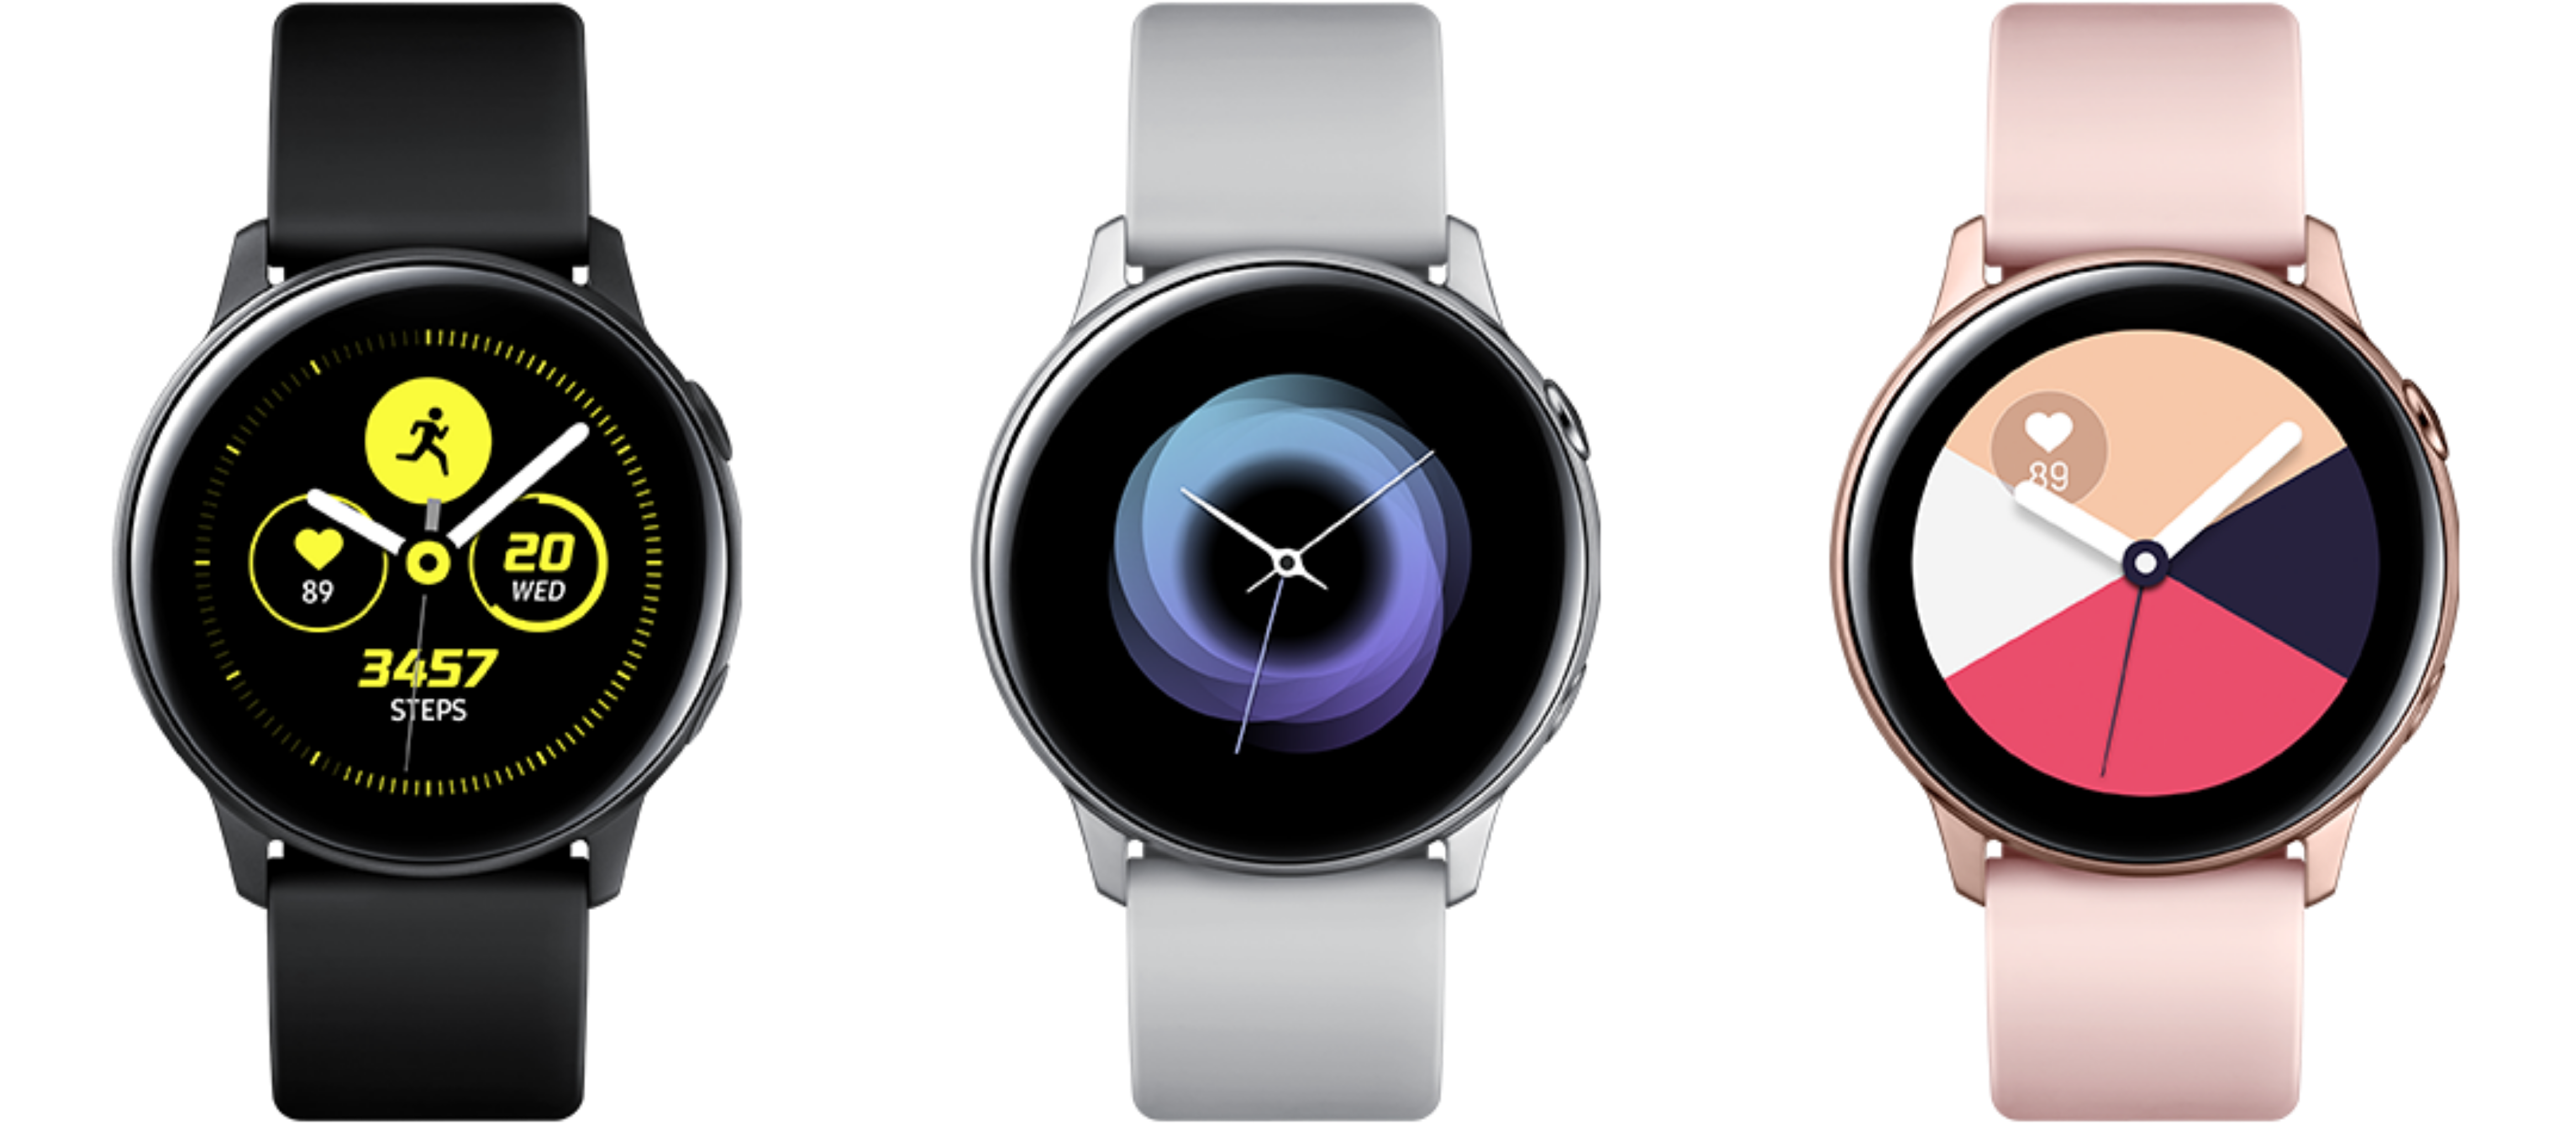 Samsung watch 1. Samsung Galaxy watch 1. Samsung watch 1 поколения. Галакси вотч 4 цвета. Samsung watch Active Silver.